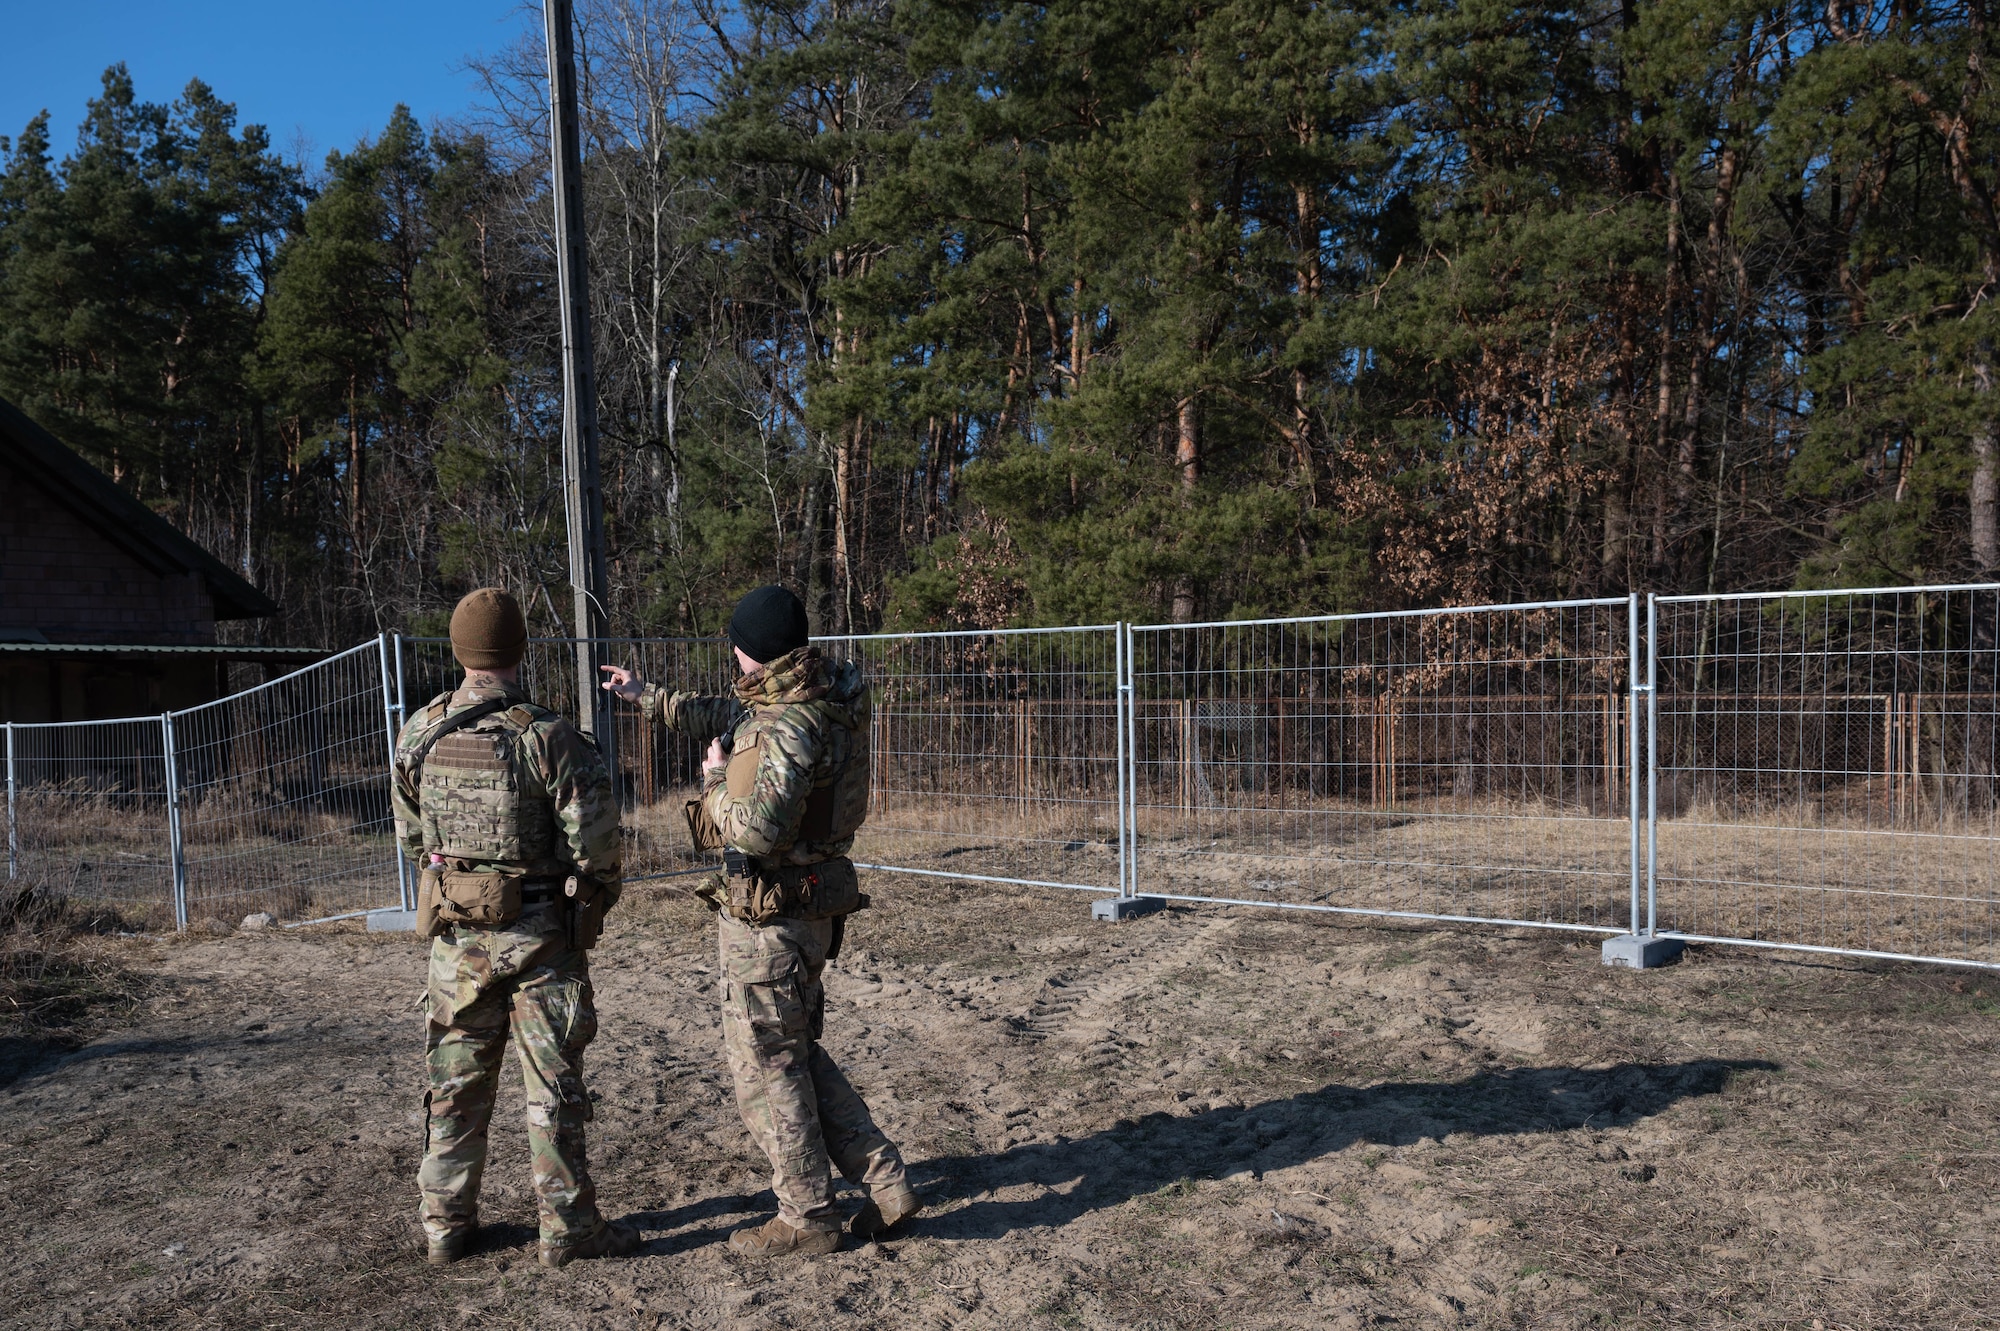 435th SFS defenders discuss perimeter security.